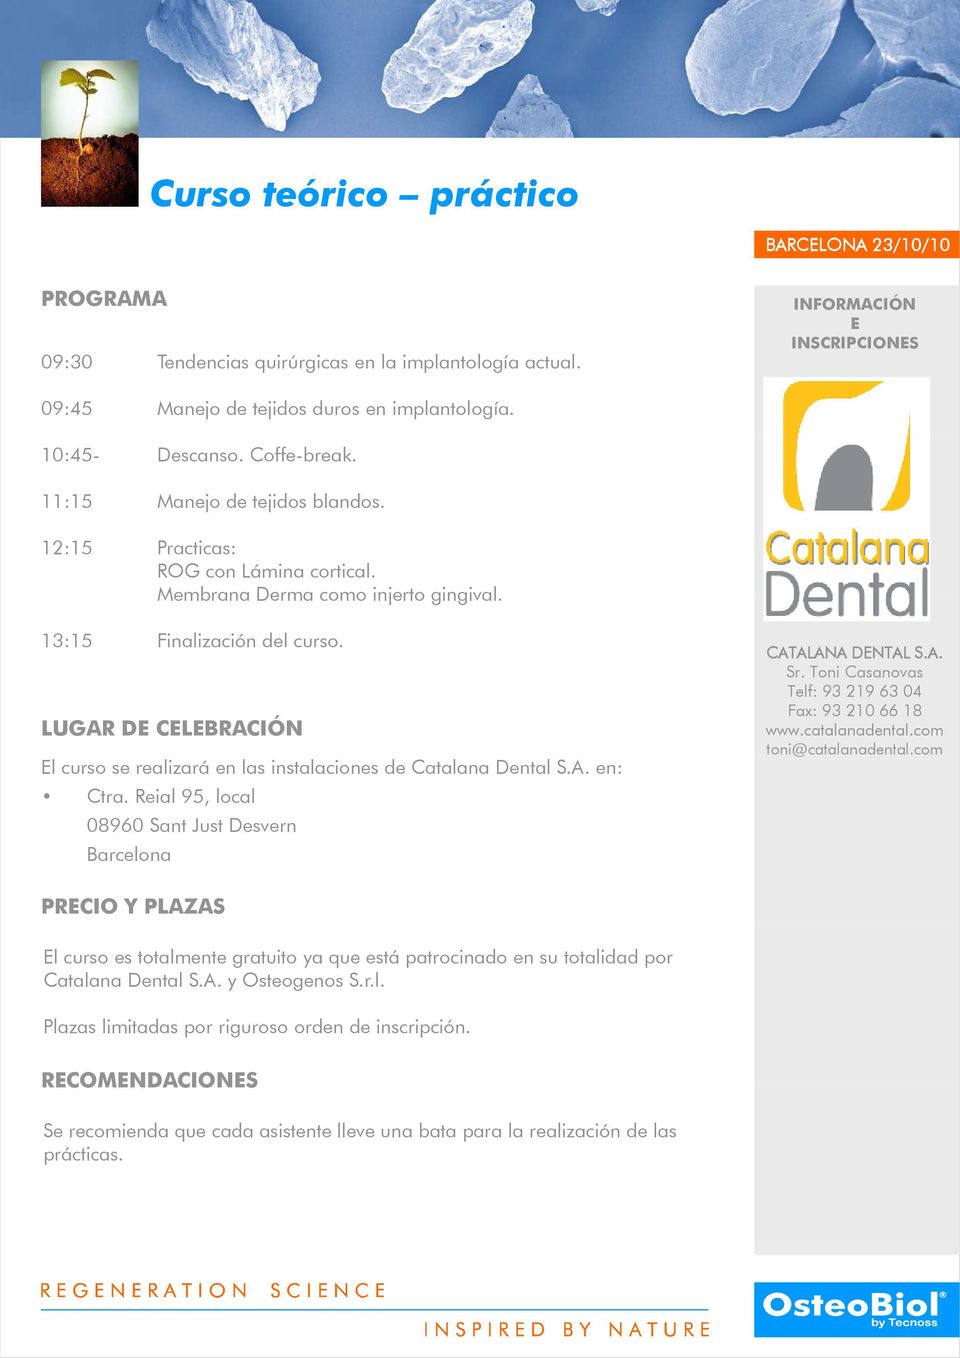 LUGAR DE CELEBRACIÓN El curso se realizará en las instalaciones de Catalana a Dental S.A. en: Ctra. Reial 95, local 08960 Sant Just Desvern Barcelona CATALANA DENTAL S.A. Sr.